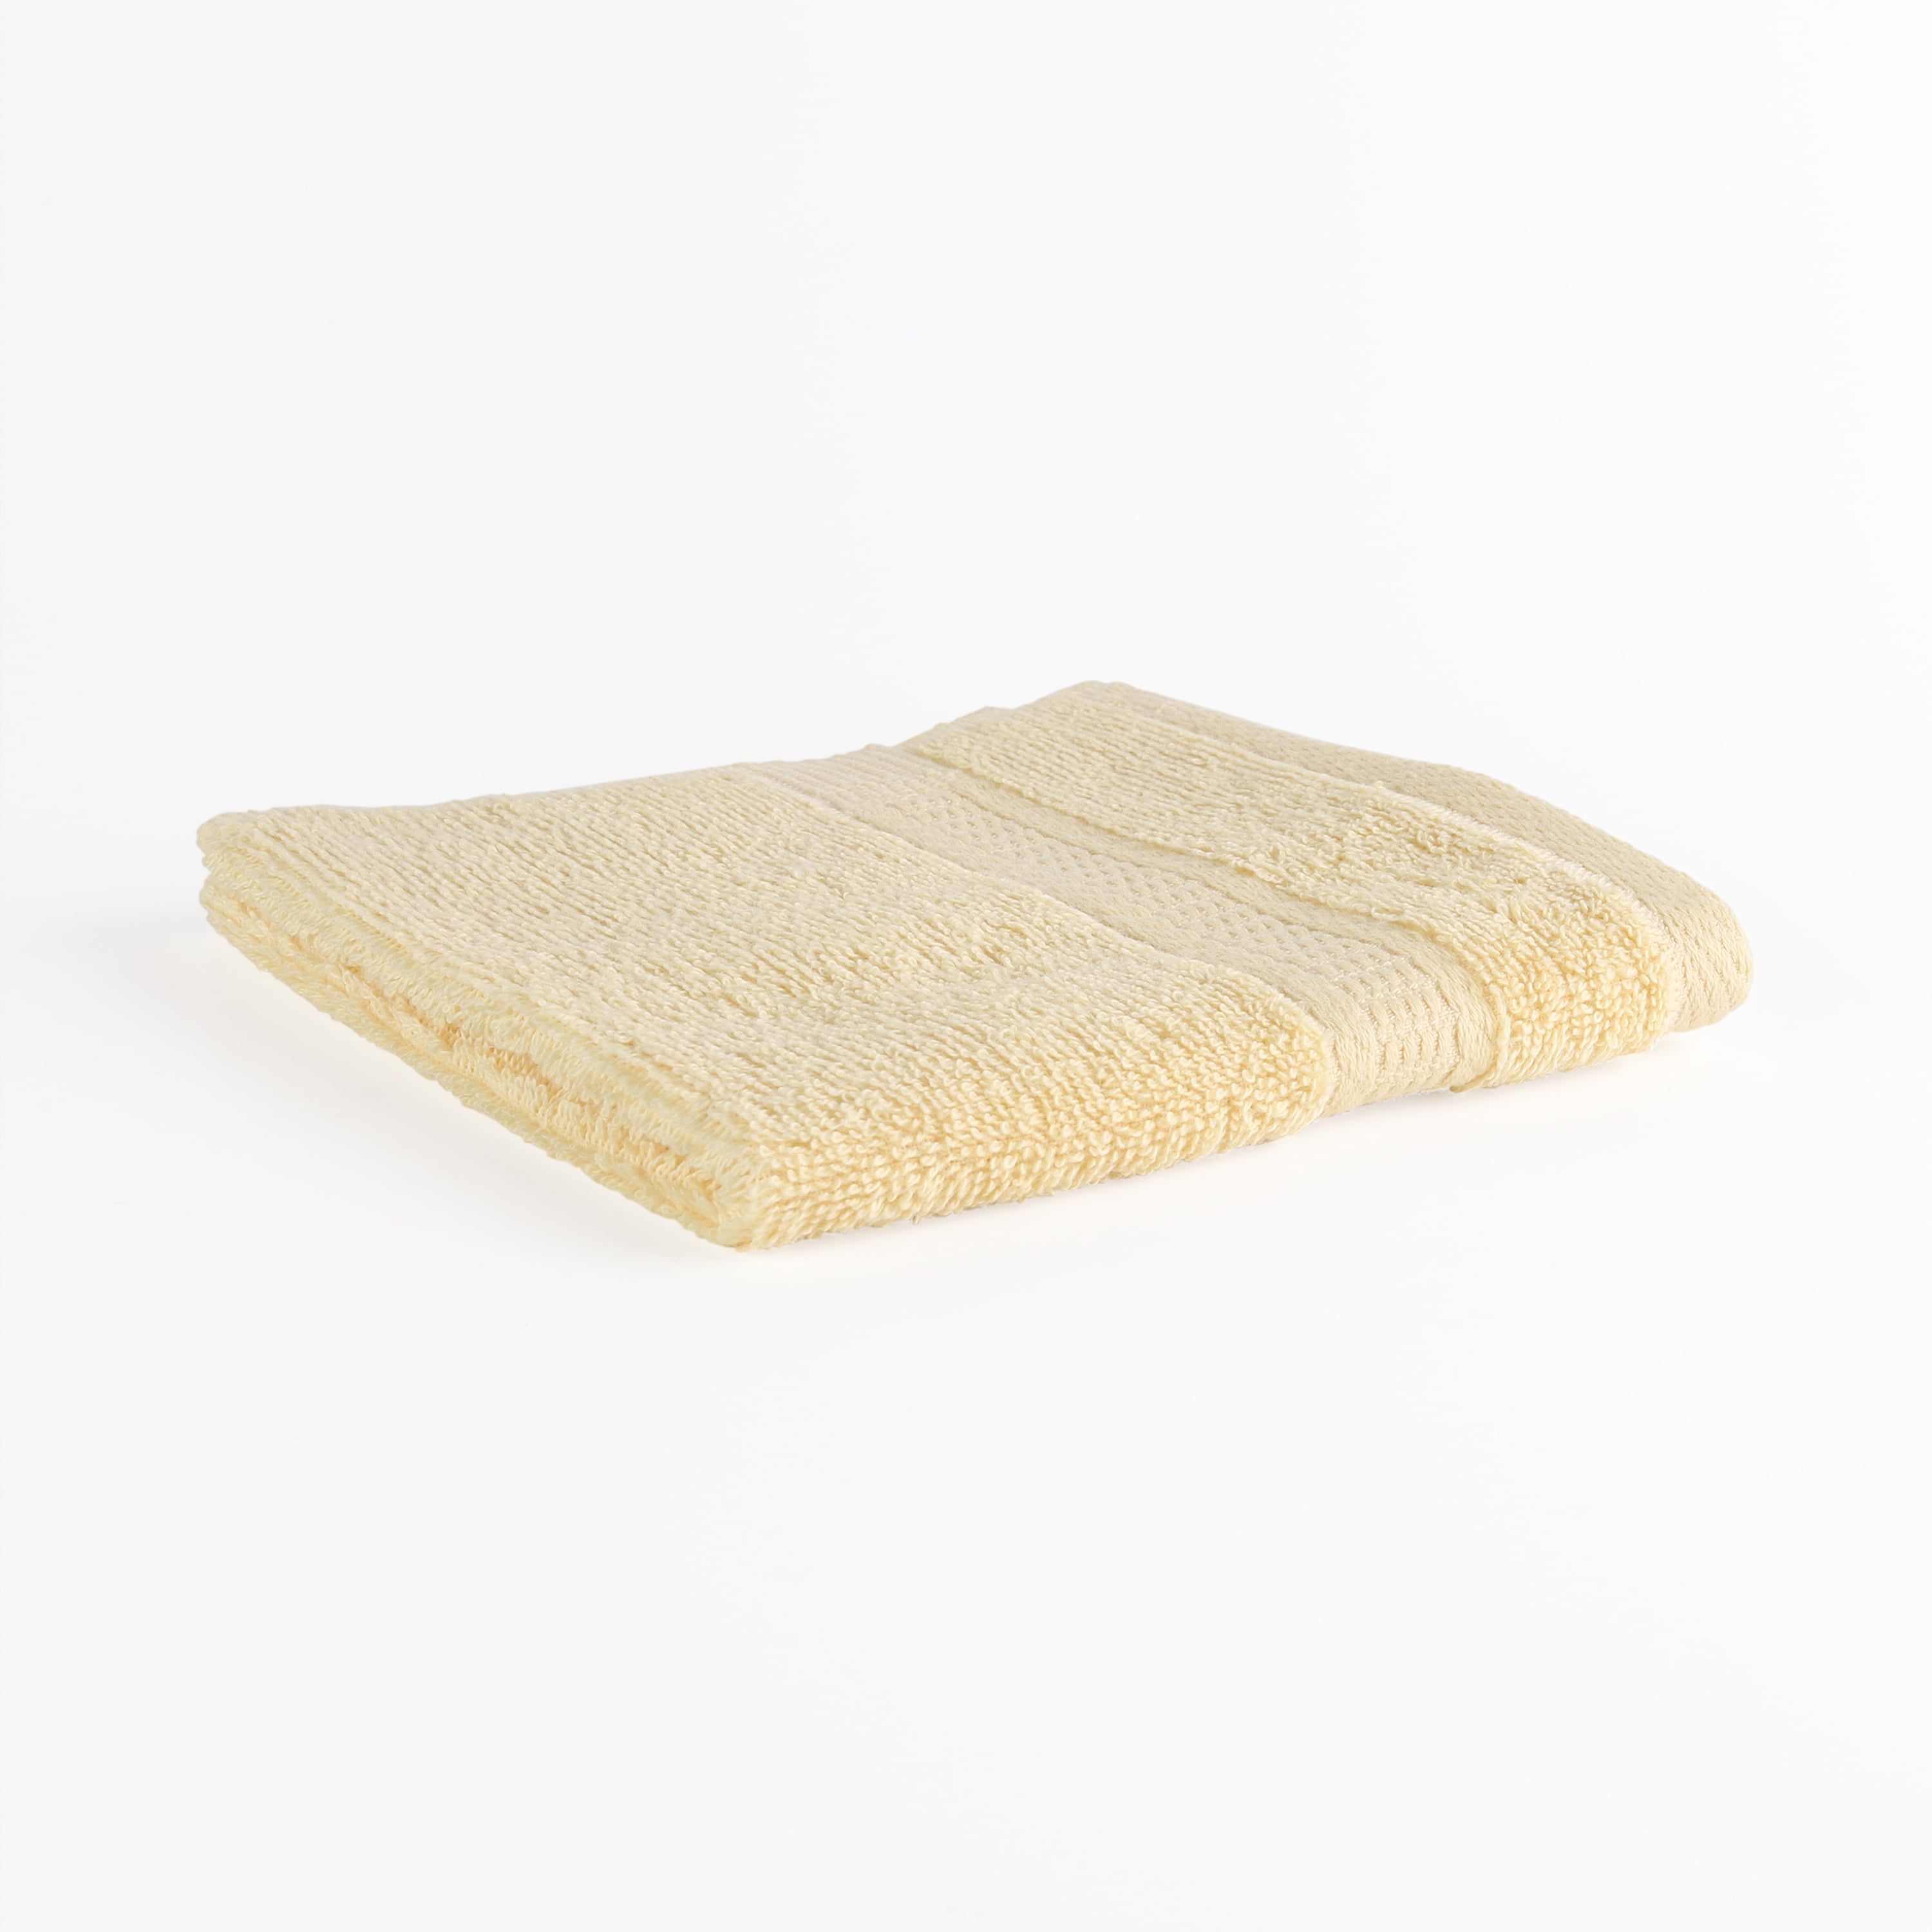 Square Towels Cotton gauze Plaid Towel Kids Bibs Daily Use Face Towels 26x26cm 